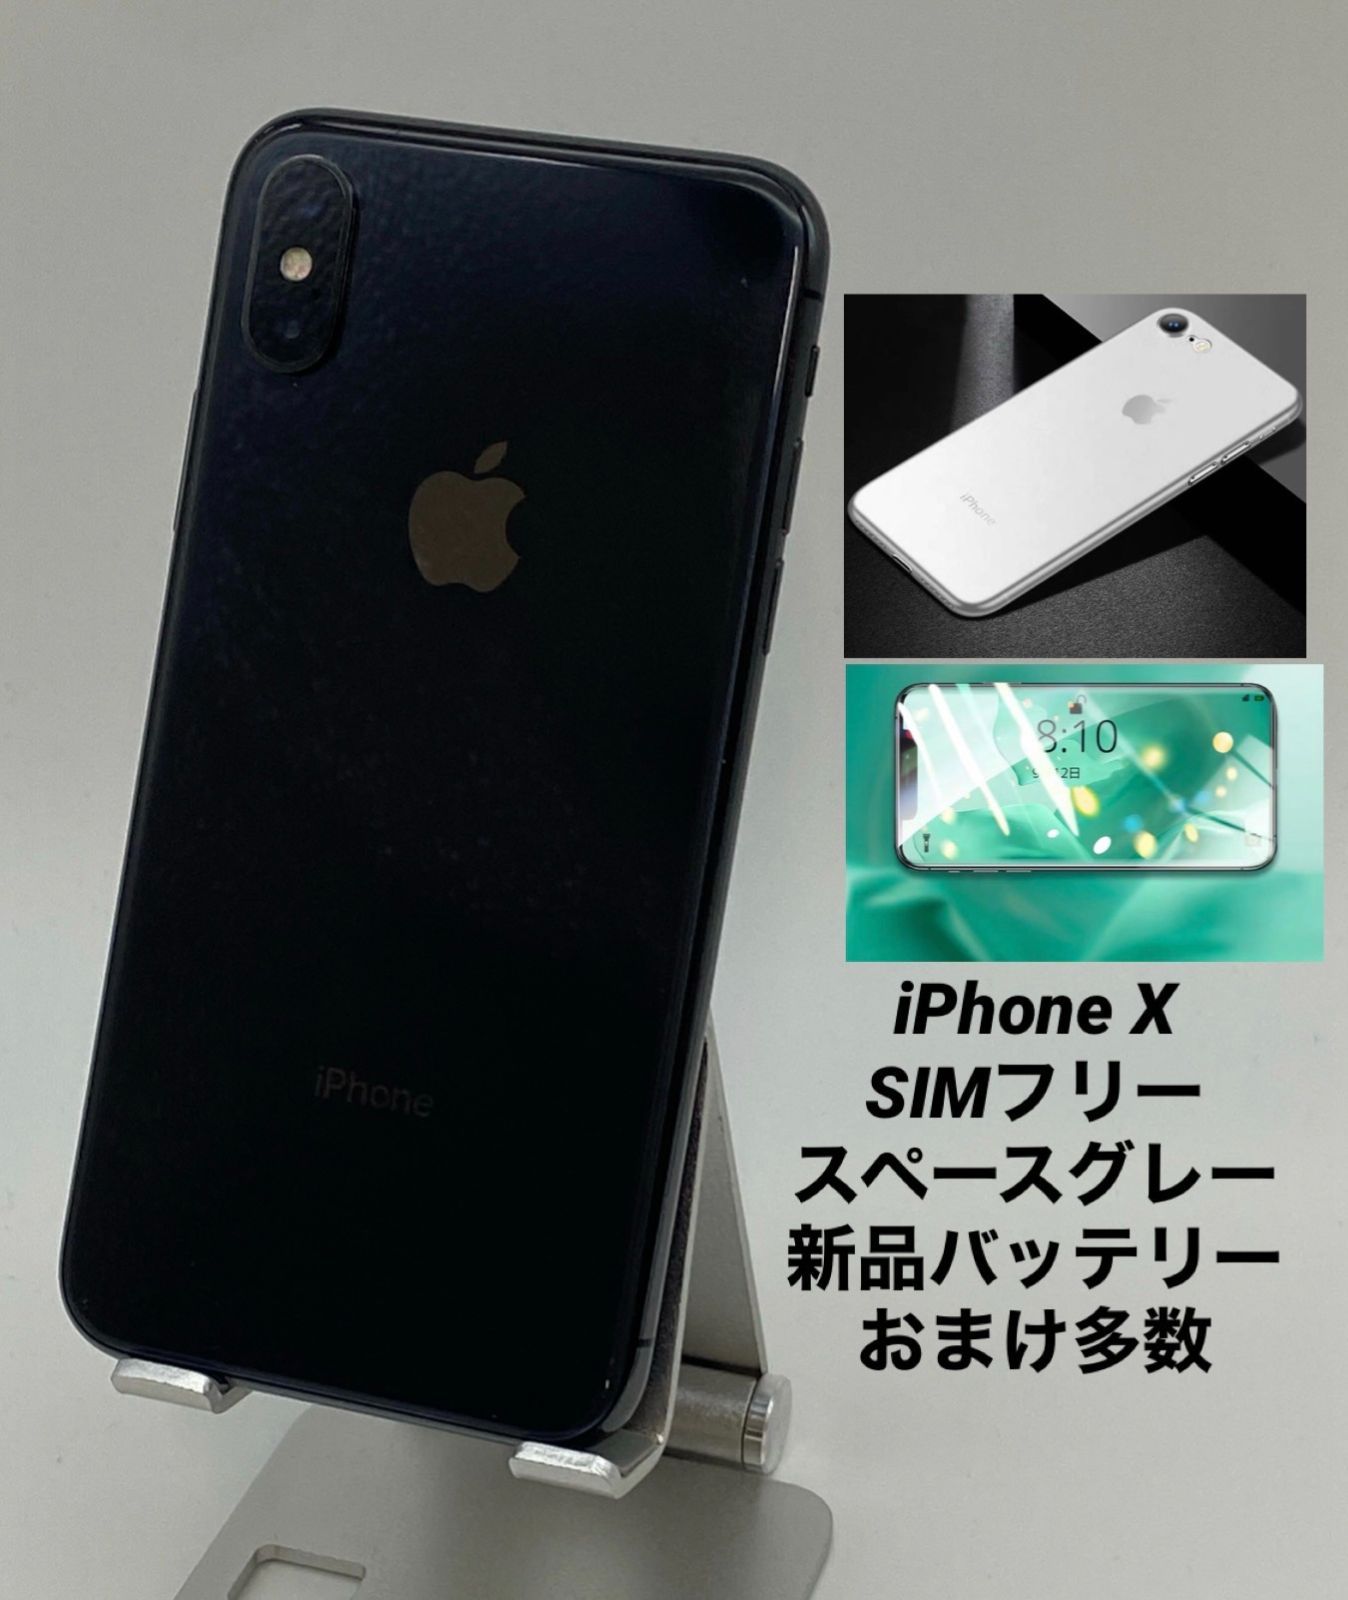 ☆美品☆iPhoneX 64GB スペースグレイ/シムフリー/大容量3100mAh新品 